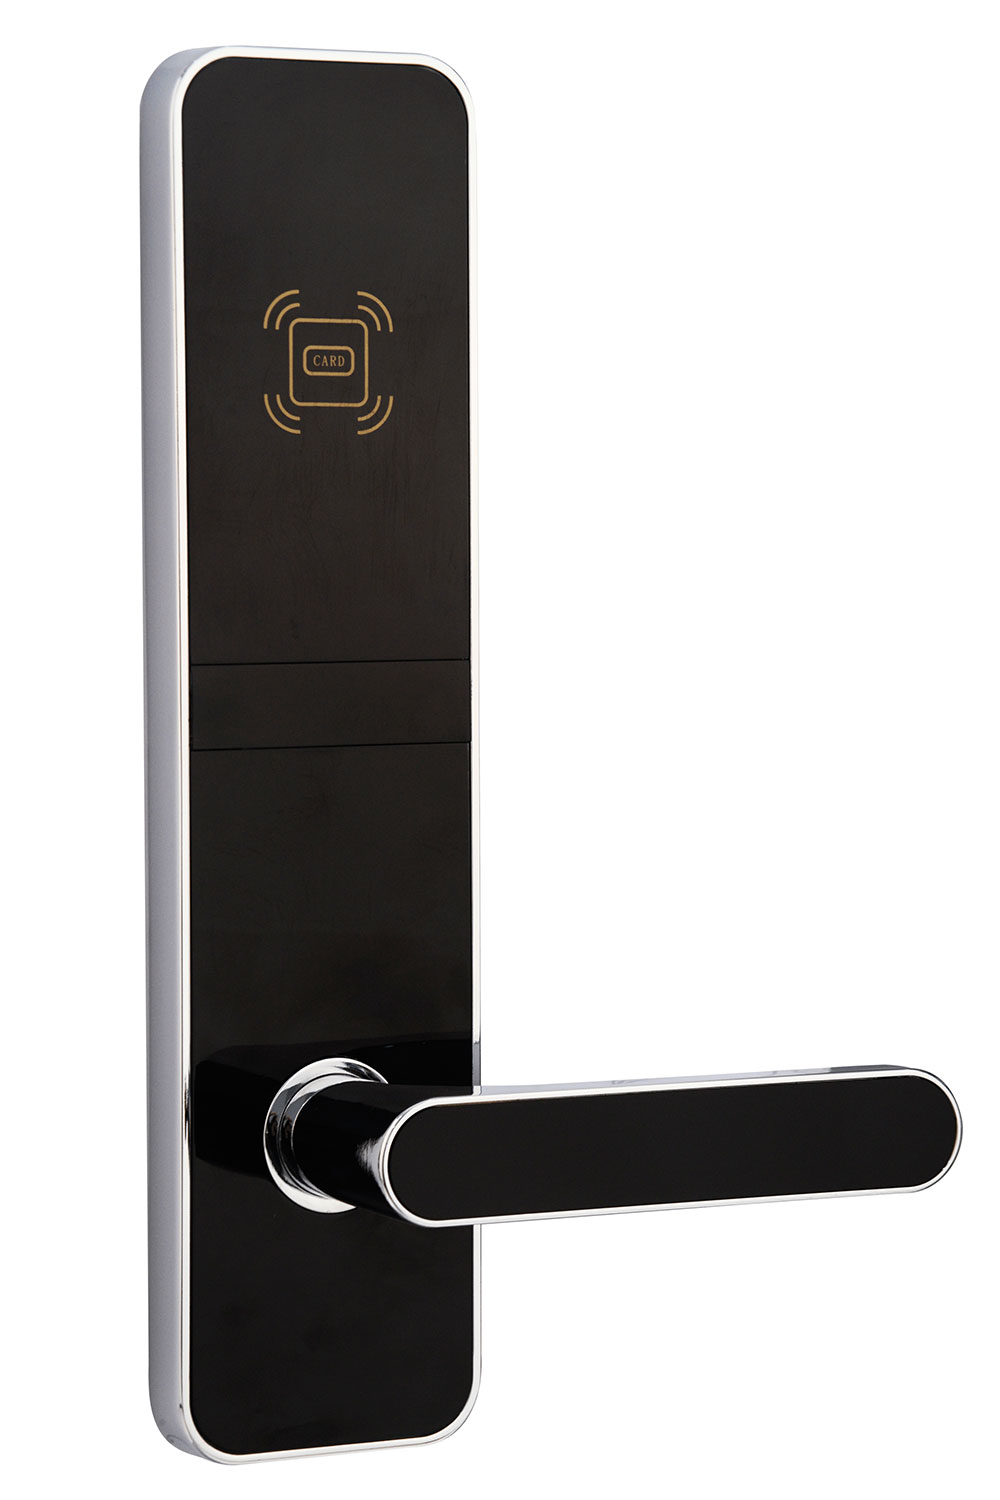 Nuevo tipo de hotel motel cerraduras de puerta con tarjeta RFID inteligente